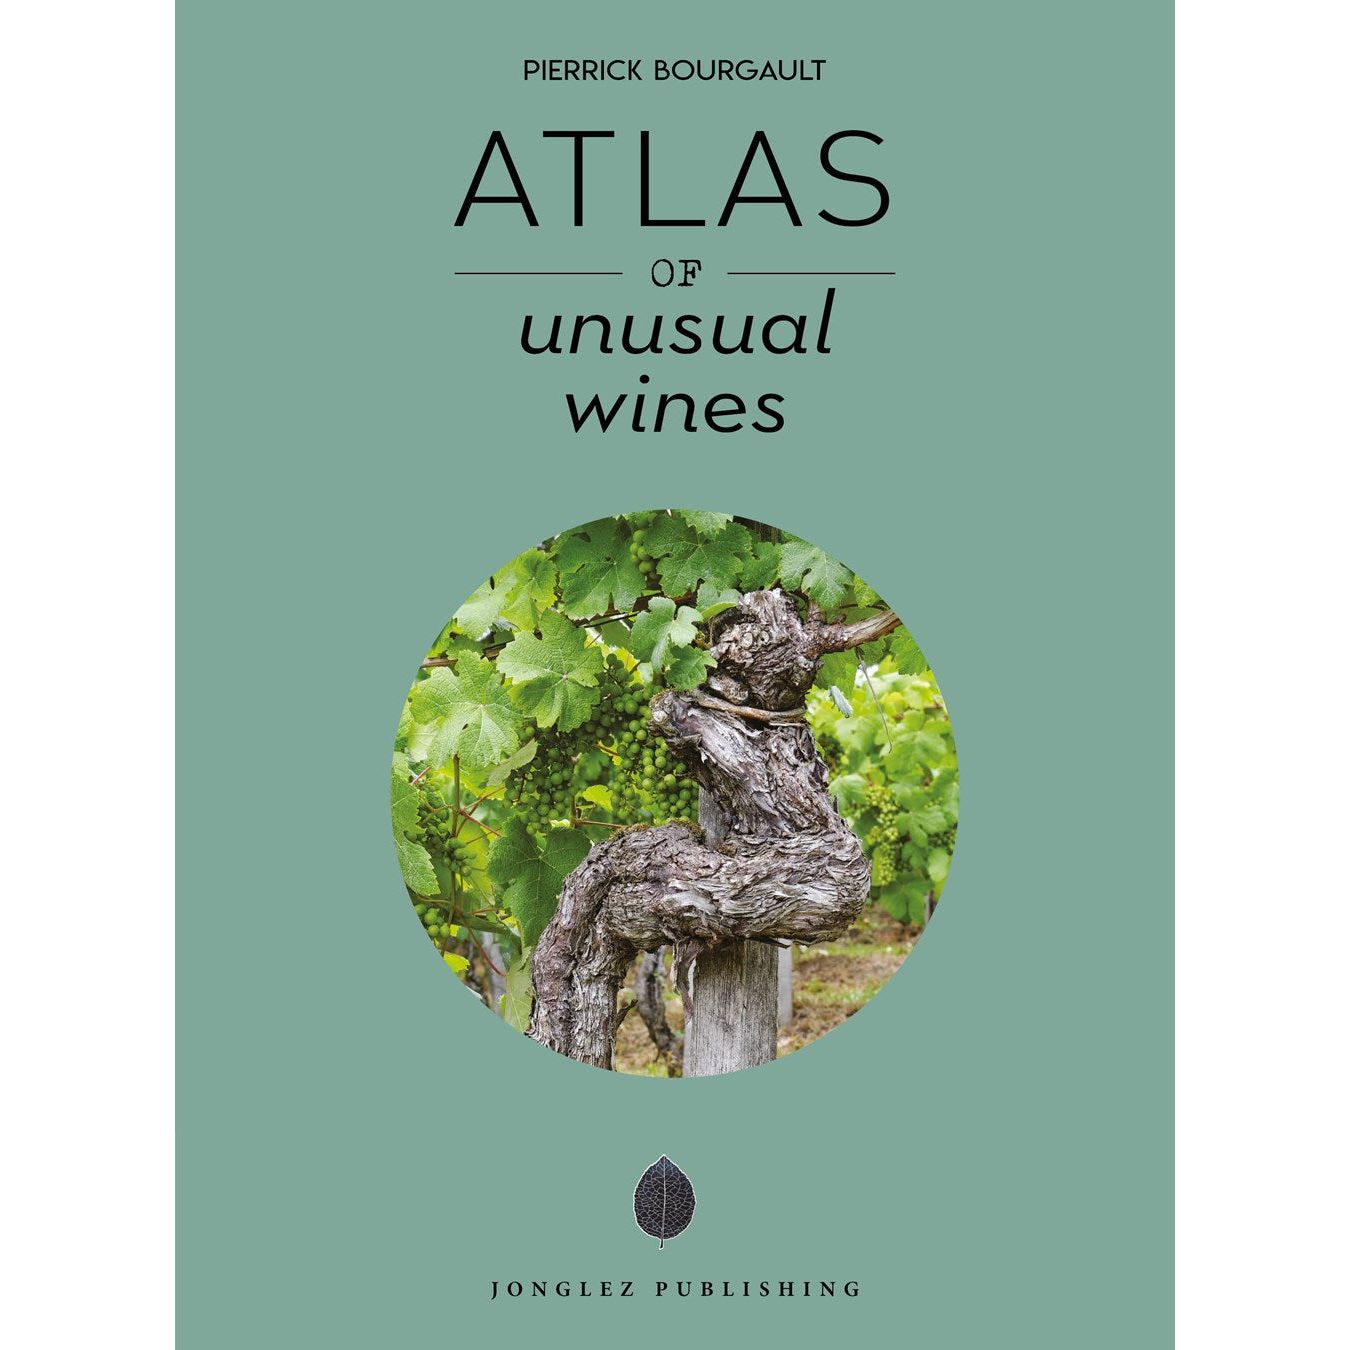 Atlas of Unusual Wines (Pierrick Bourgault)